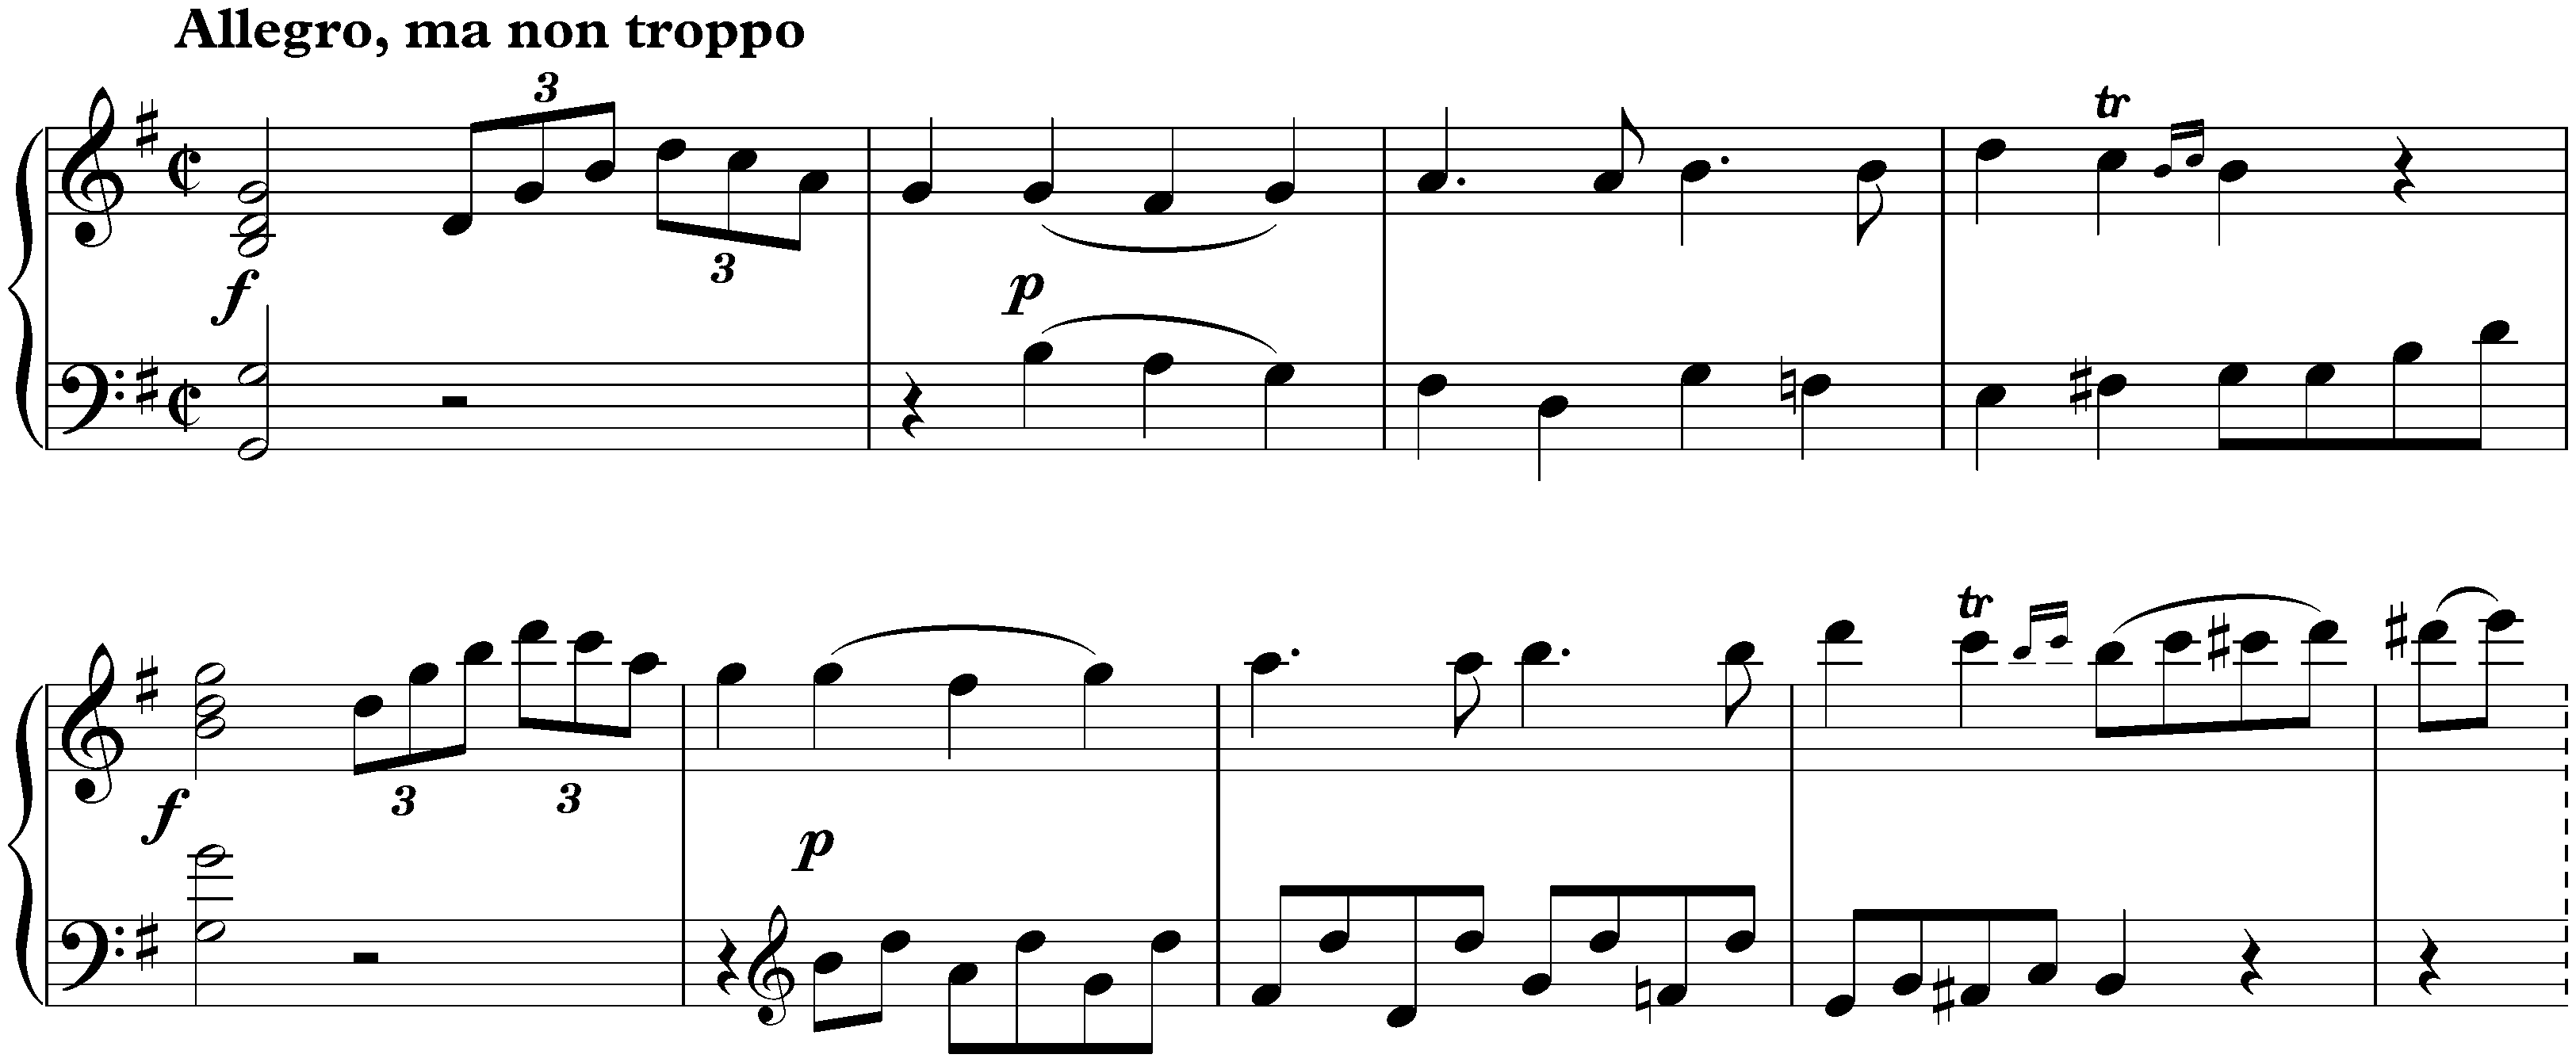 Sonata no. 20 in G major, op. 49 no. 2; 1. Allegro, ma non troppo